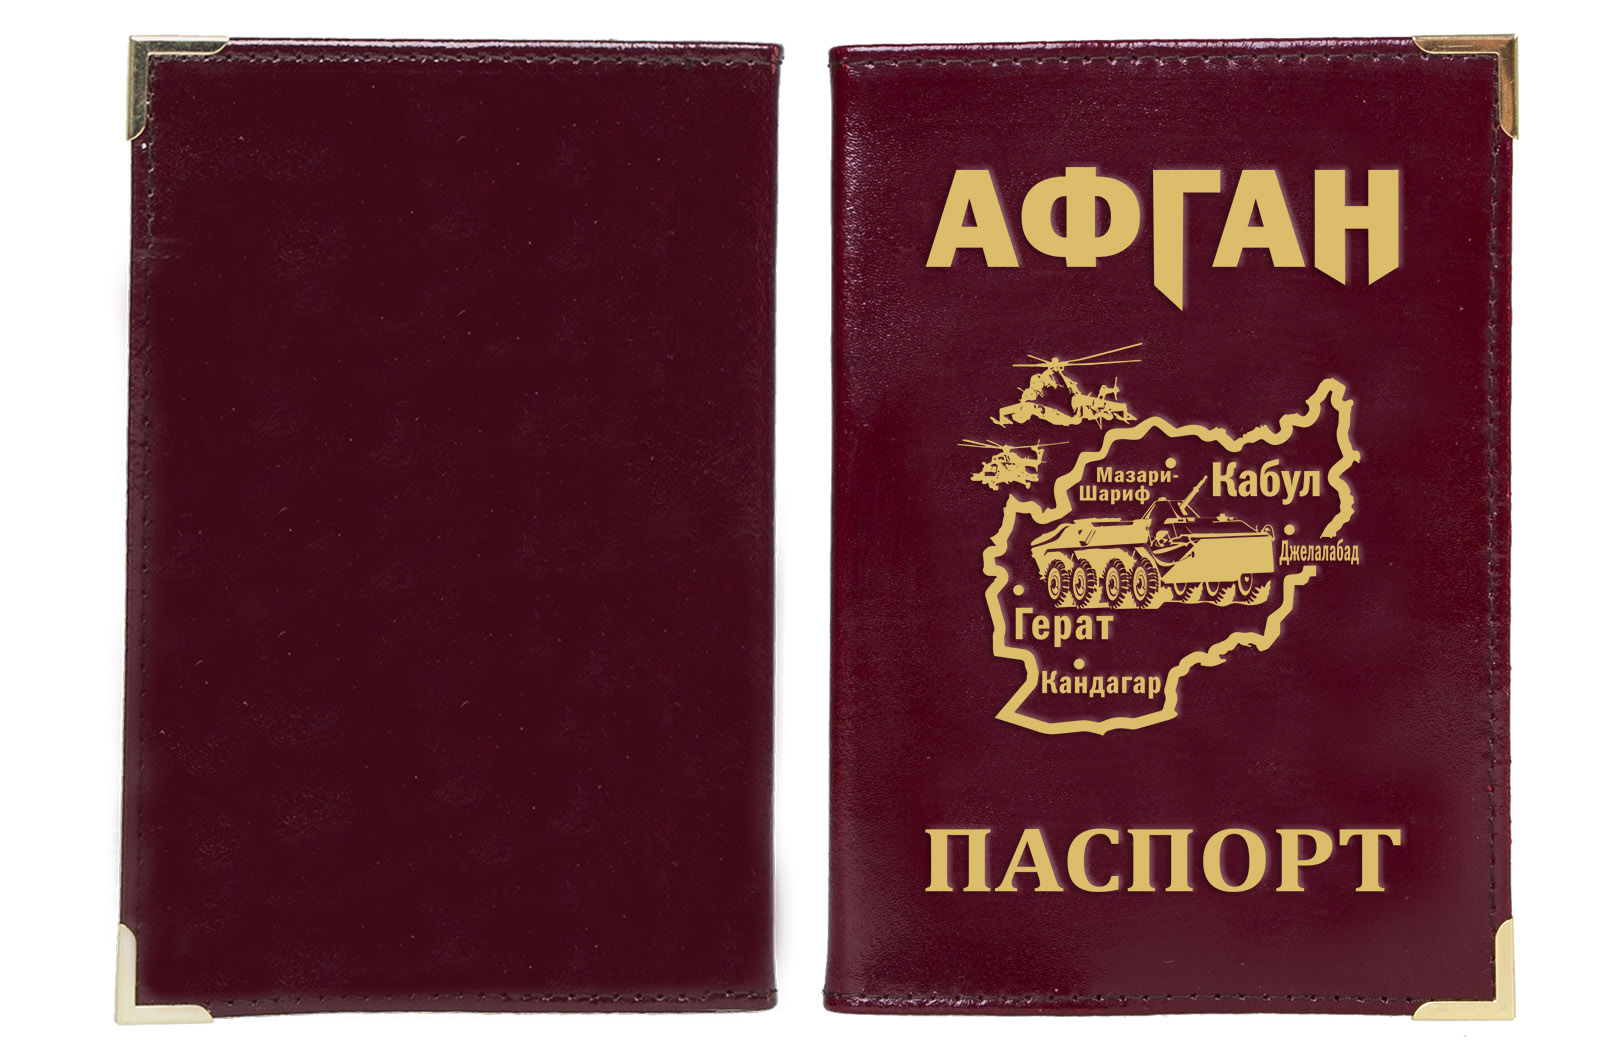 Обложка на паспорт "Афган" 